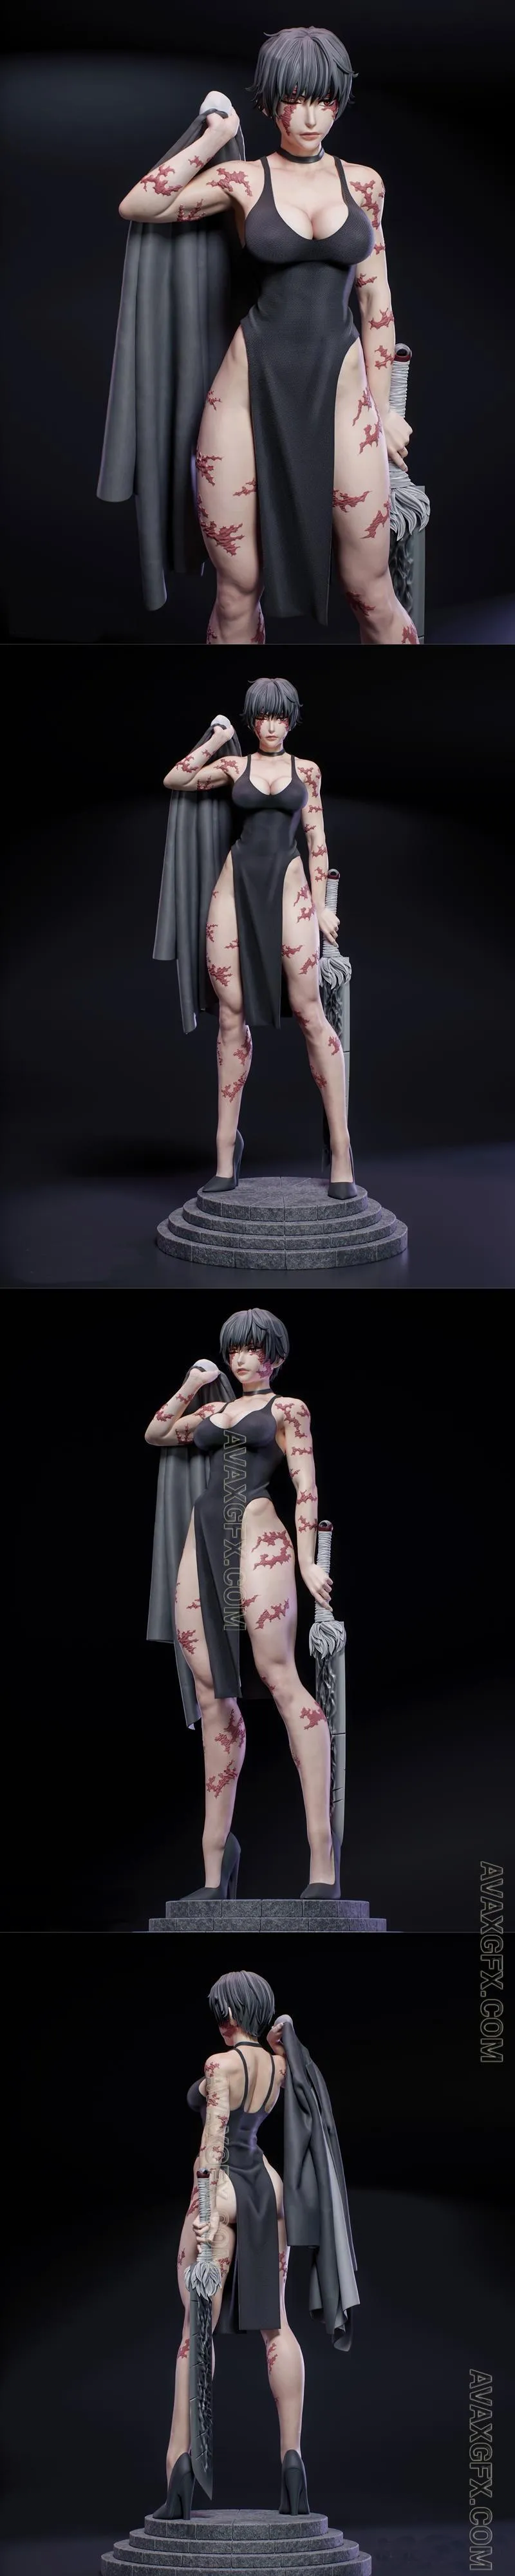 KuGo figures - Maki Zenin - STL 3D Model